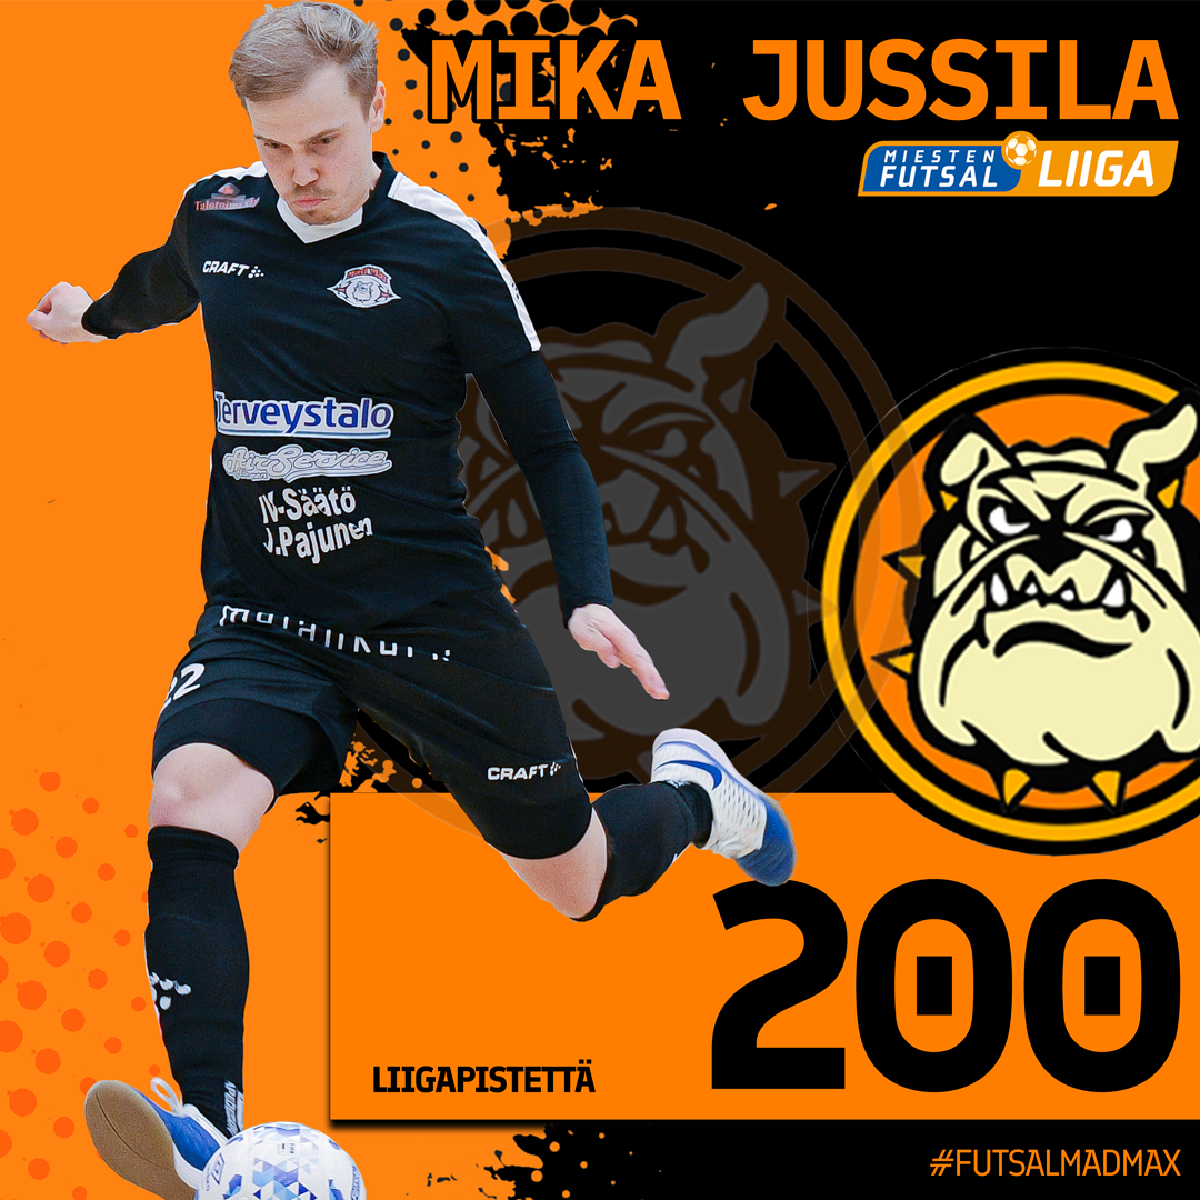 Mika Jussila nousi yli 200 liigapisteen!